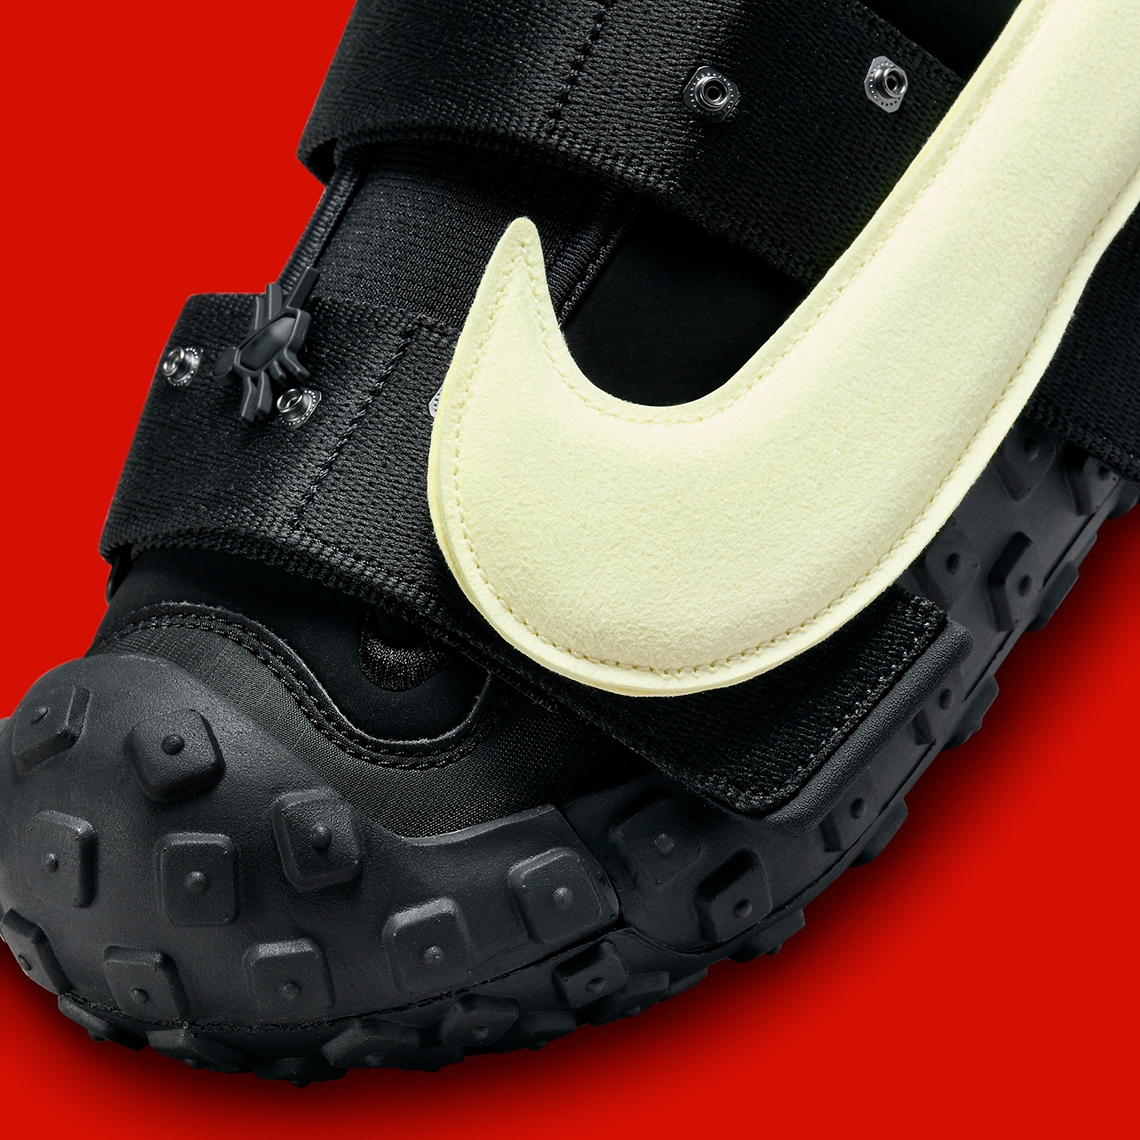 Cpfm Nike Flea 2 Black Alabaster Dv7164 001 Release Date 9